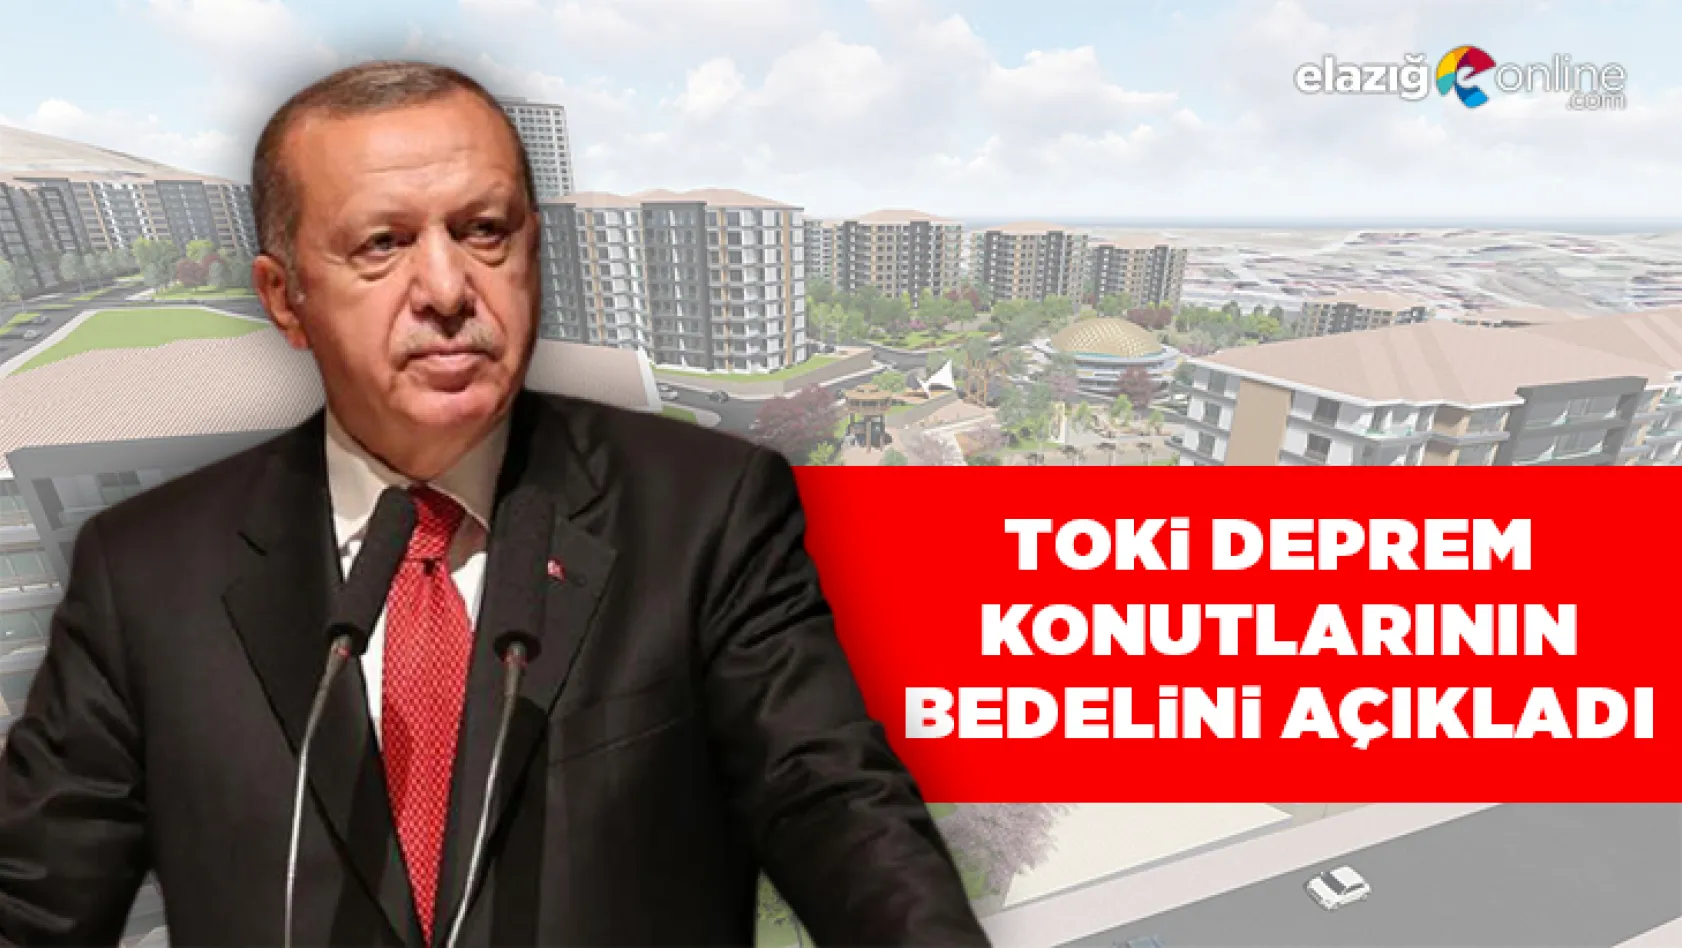 Cumhurbaşkanı Erdoğan, TOKİ deprem konutlarının bedelini açıkladı